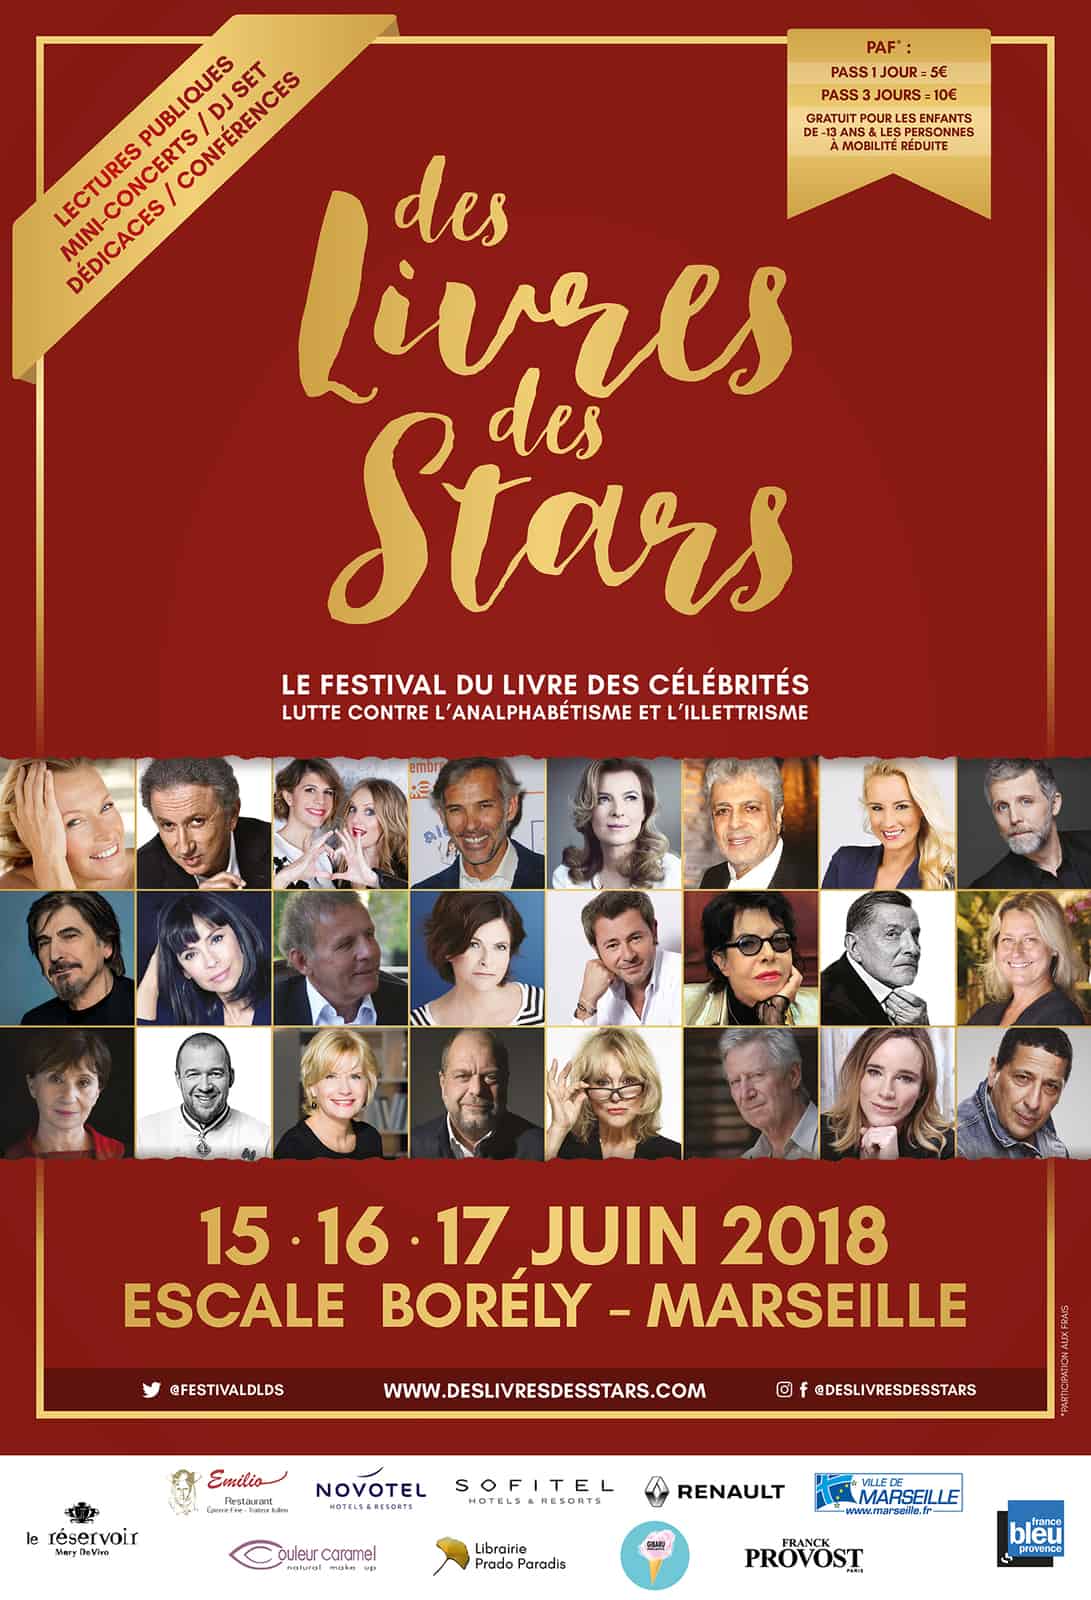 , Des livres, des stars – Le festival qui met en lumière les ouvrages de célébrités, Made in Marseille